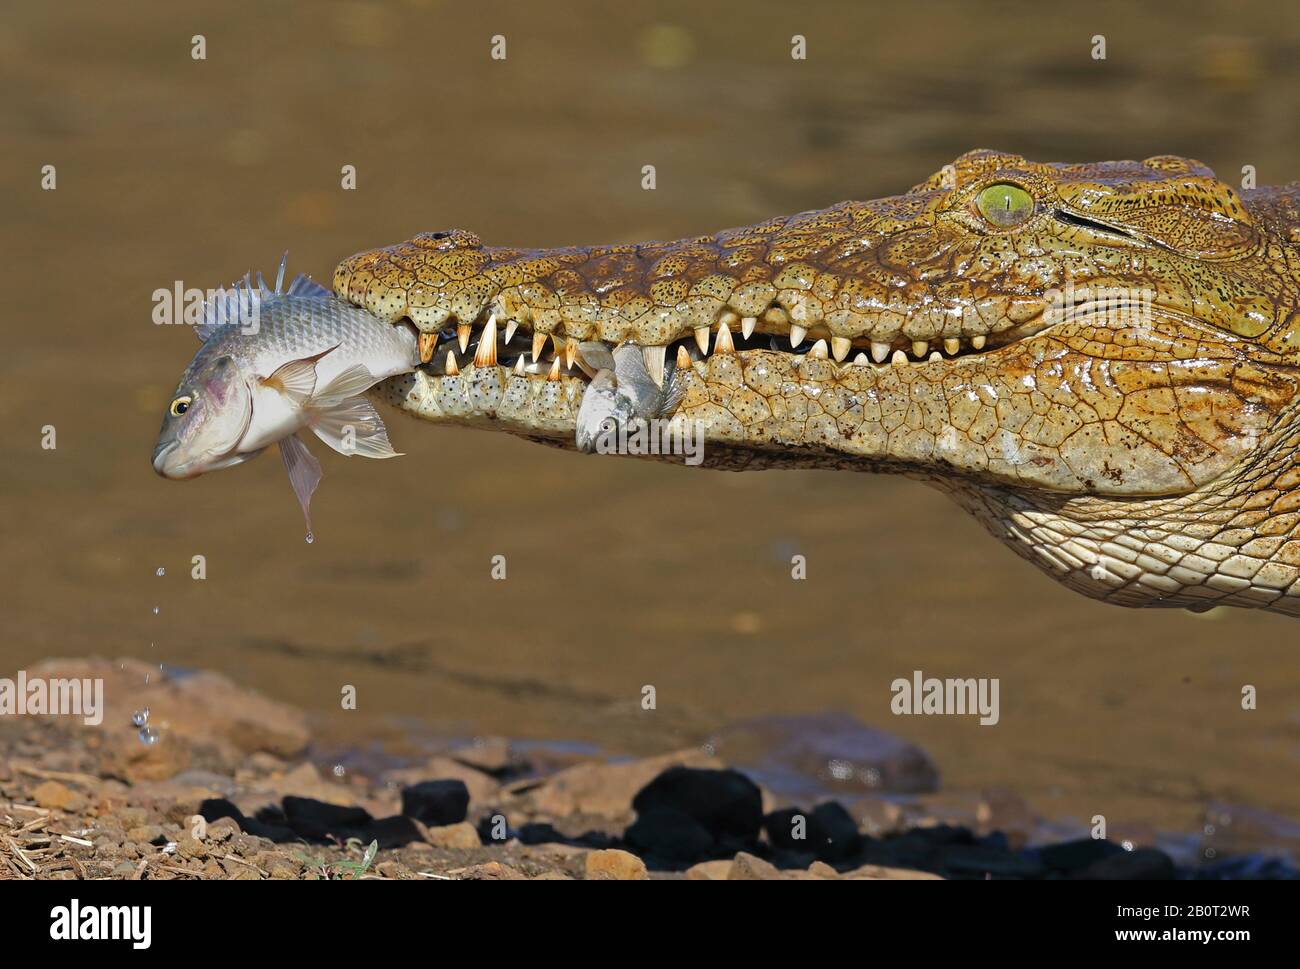 Crocodile du Nil (Crocodylus niloticus), avec des poissons catchés dans la bouche, portrait, Afrique du Sud, Lowveld, Parc national Krueger Banque D'Images